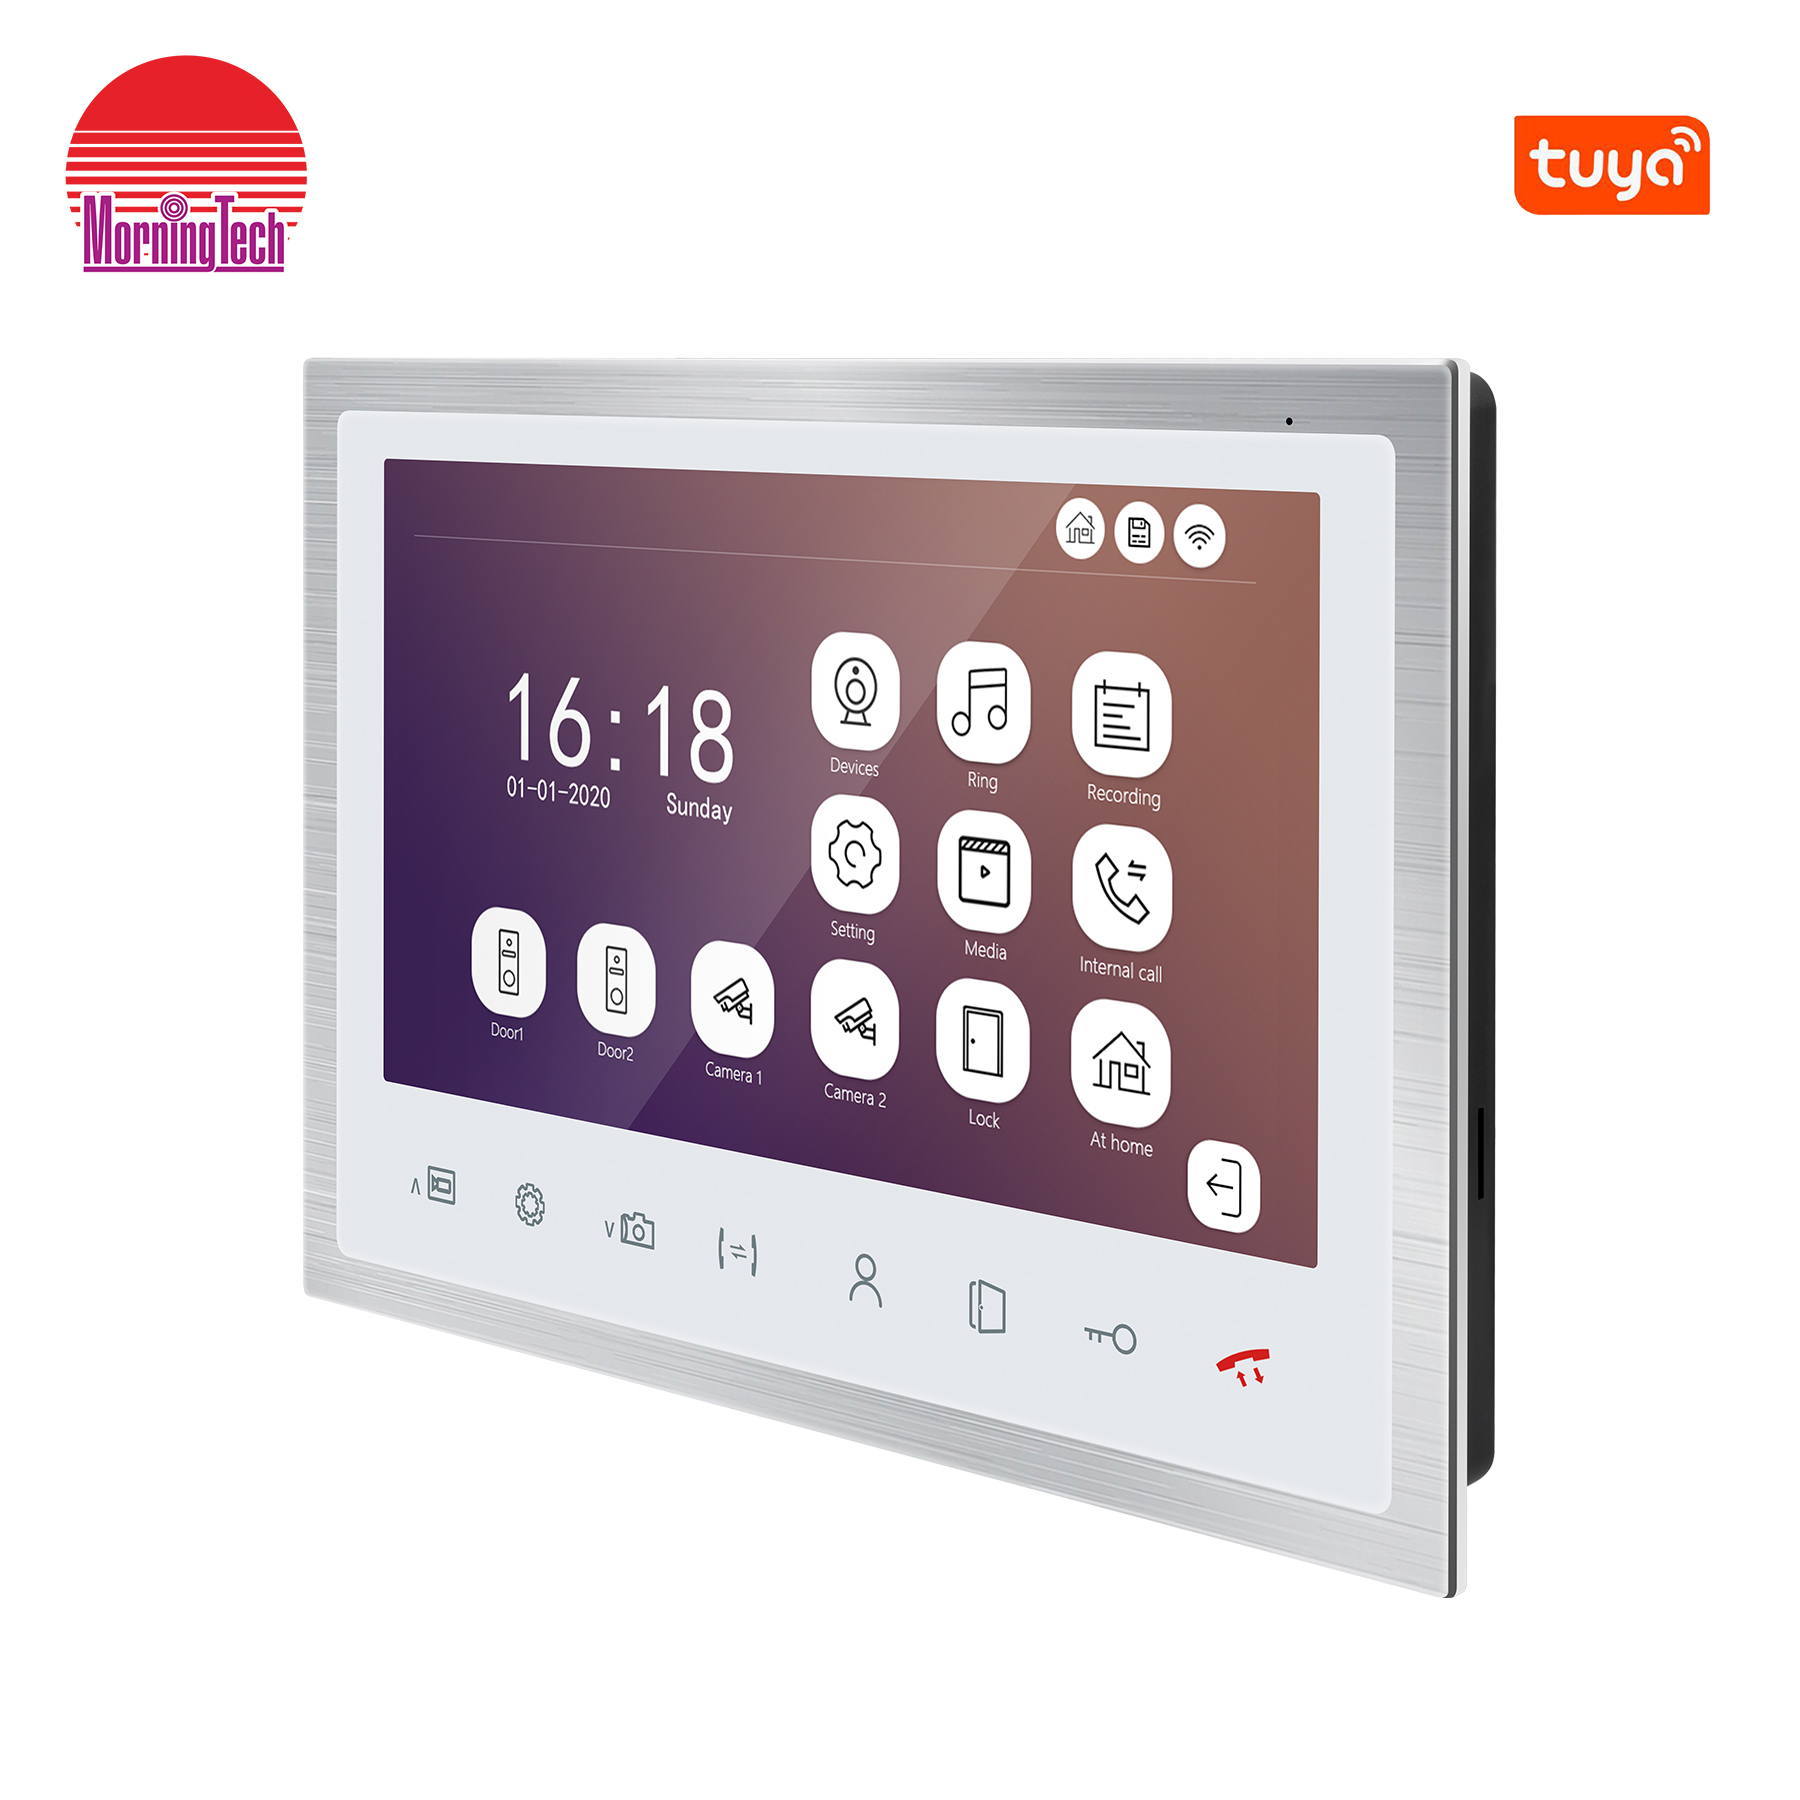 95102HP App Steuerung Video Türklingel Smart Home Geräte Video Tür Telefon Fernentriegelung und Überwachung Video Tür Gegensprechanlage